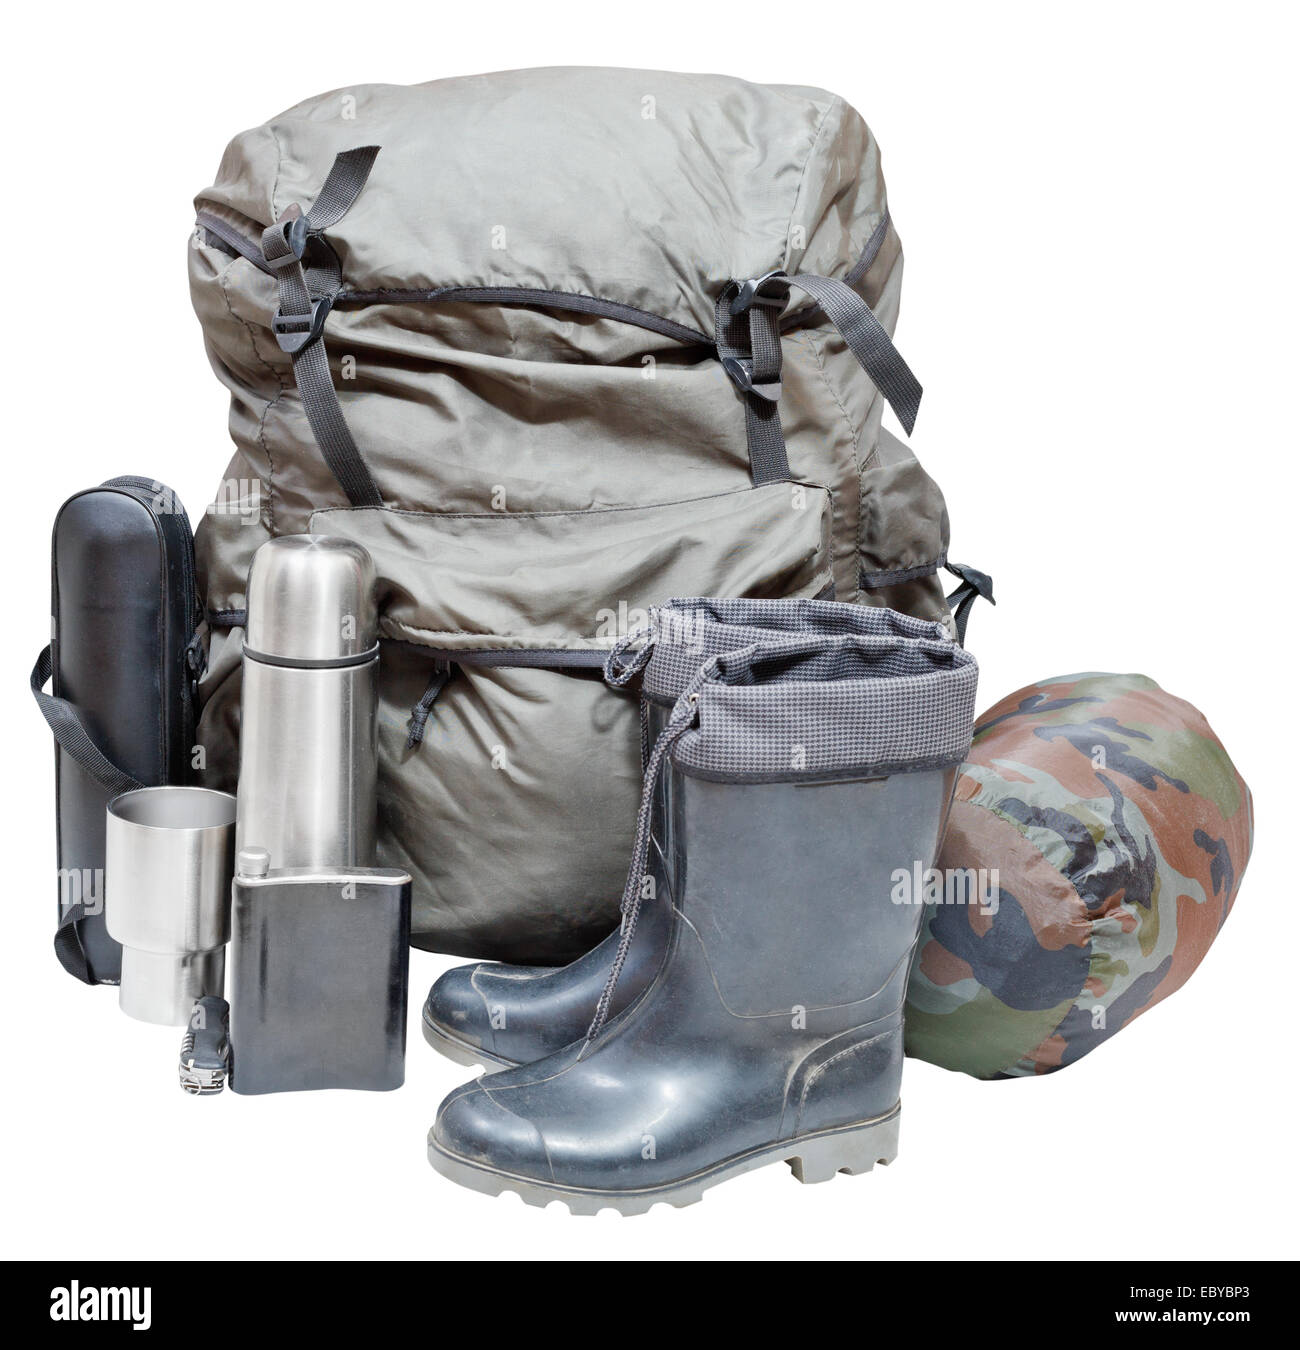 Ensemble de l'équipement de camping avec sac à dos, les endurants, thermos, couteau, fiole, pouvez, sac de couchage isolé sur fond blanc Banque D'Images